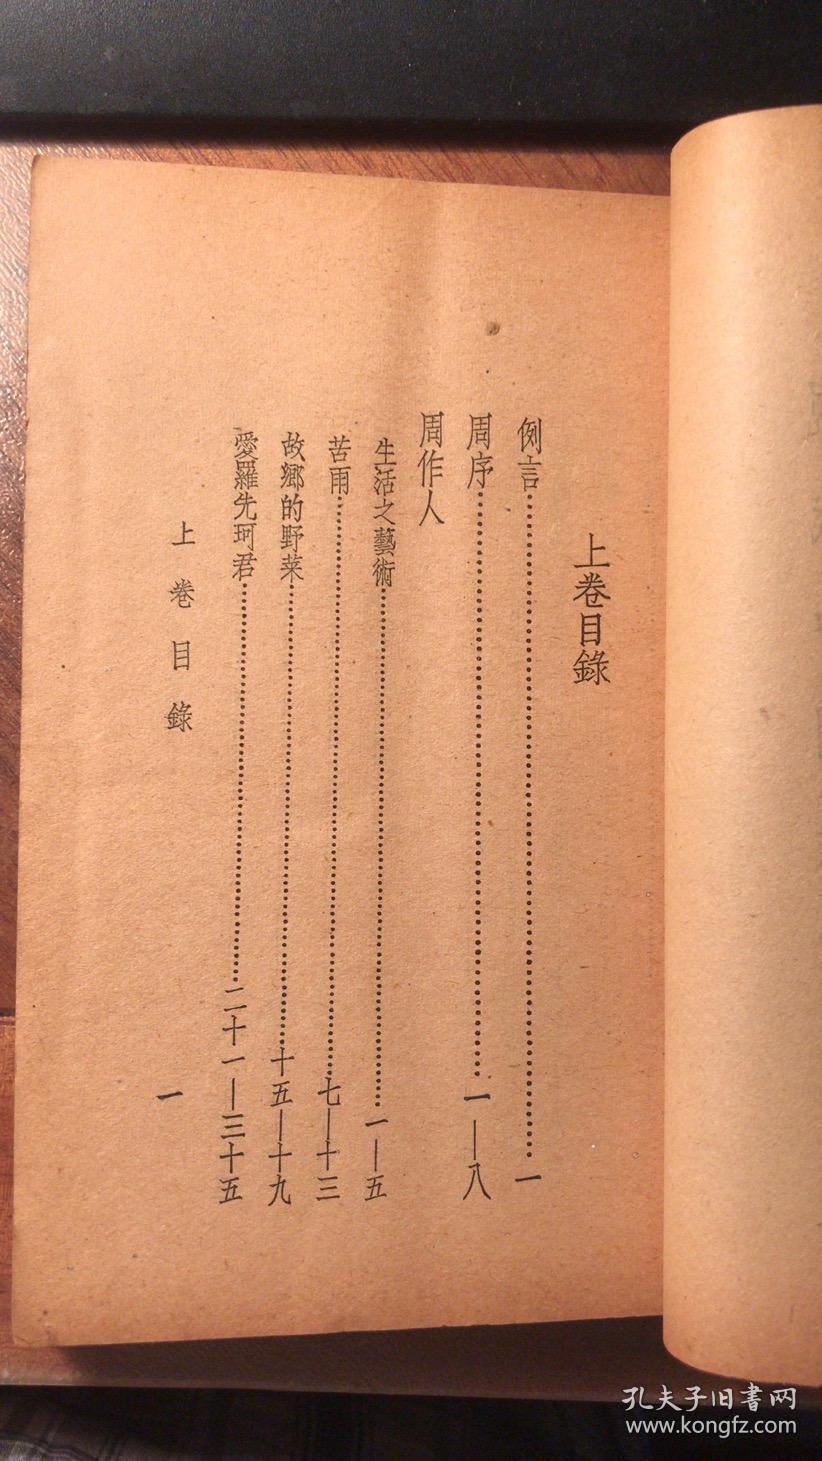 散文选(上卷 北平人文书店1935年1月初版)